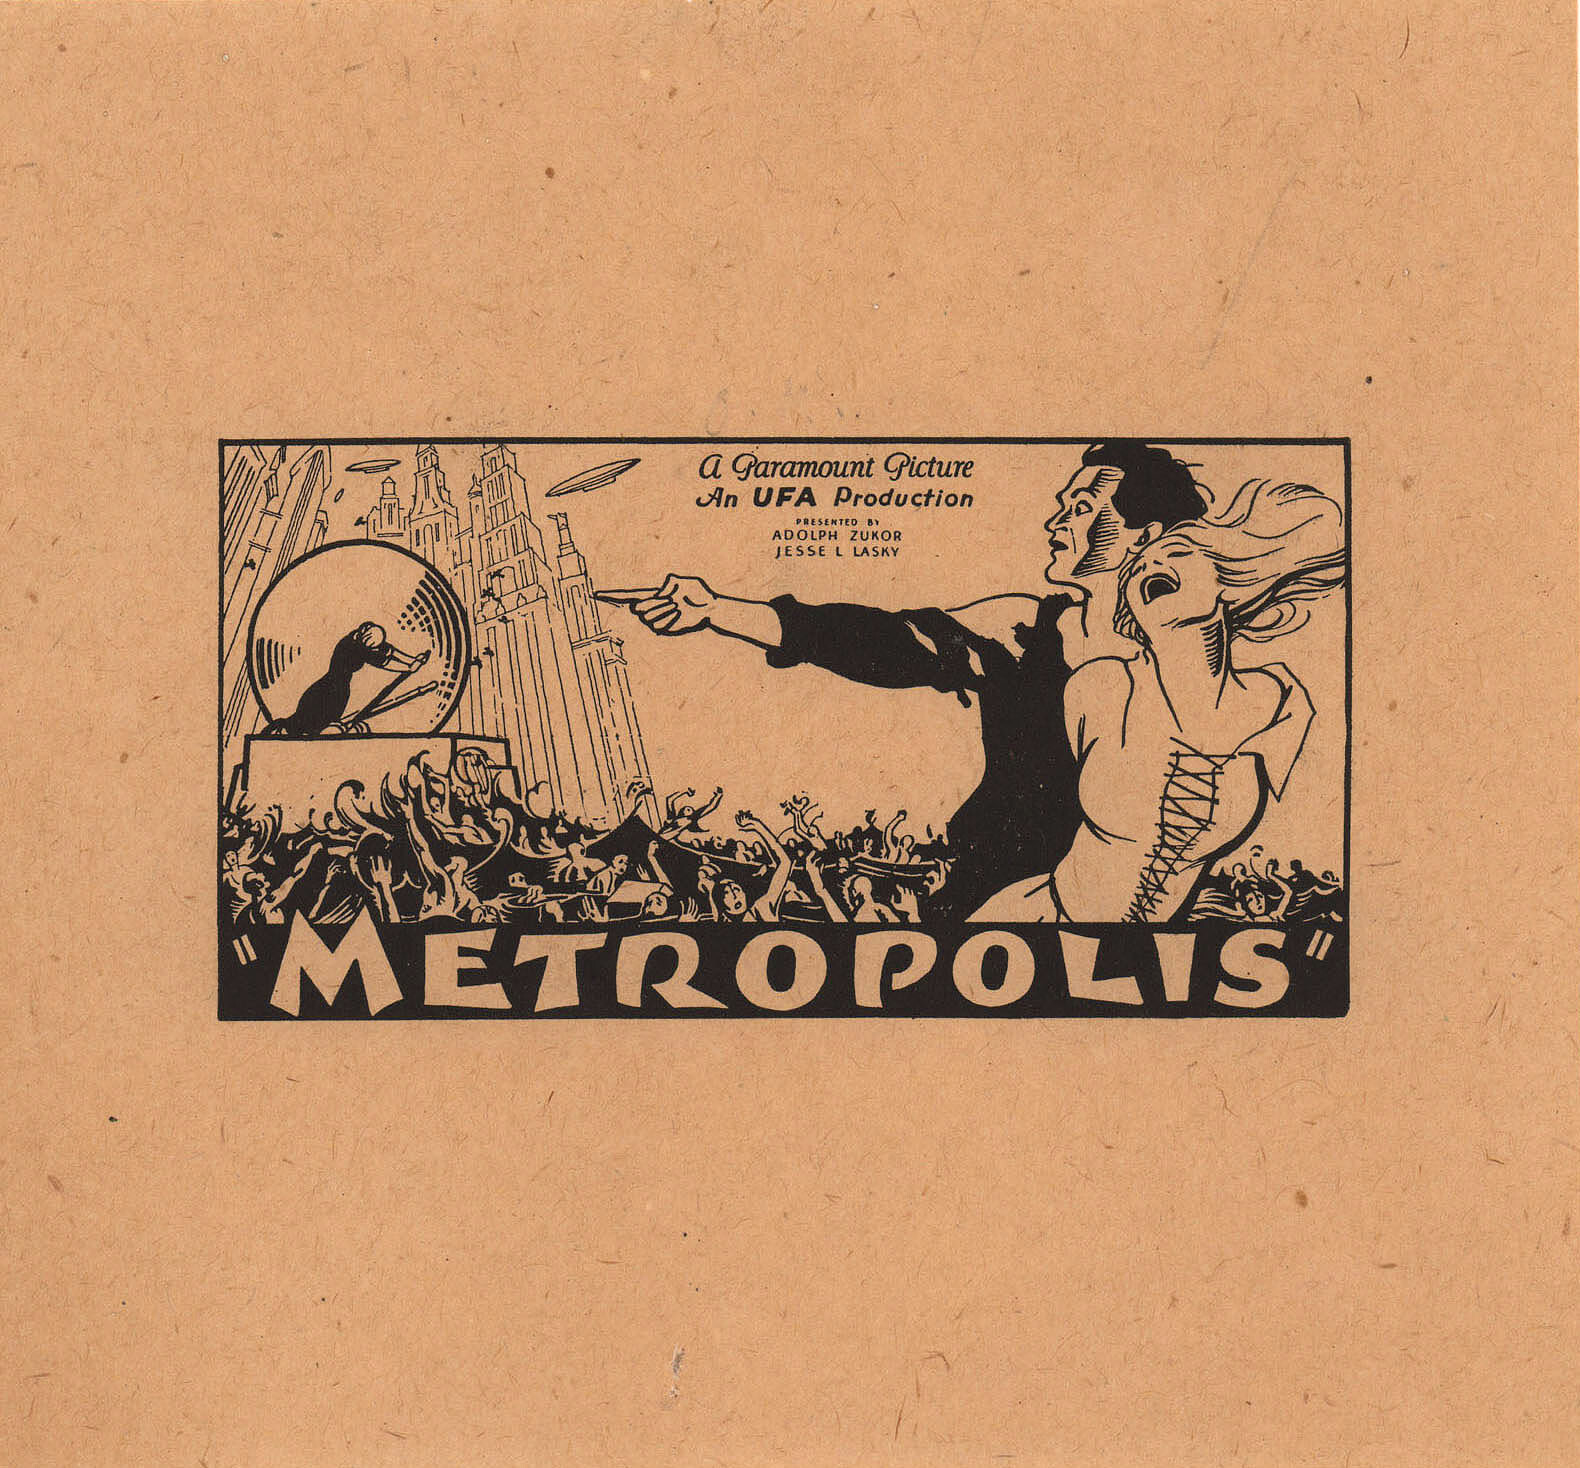 Метрополис (Metropolis, 1927), режиссёр Фриц Ланг, постер к фильму в стиле ар-деко (США, 1927 год) (6)